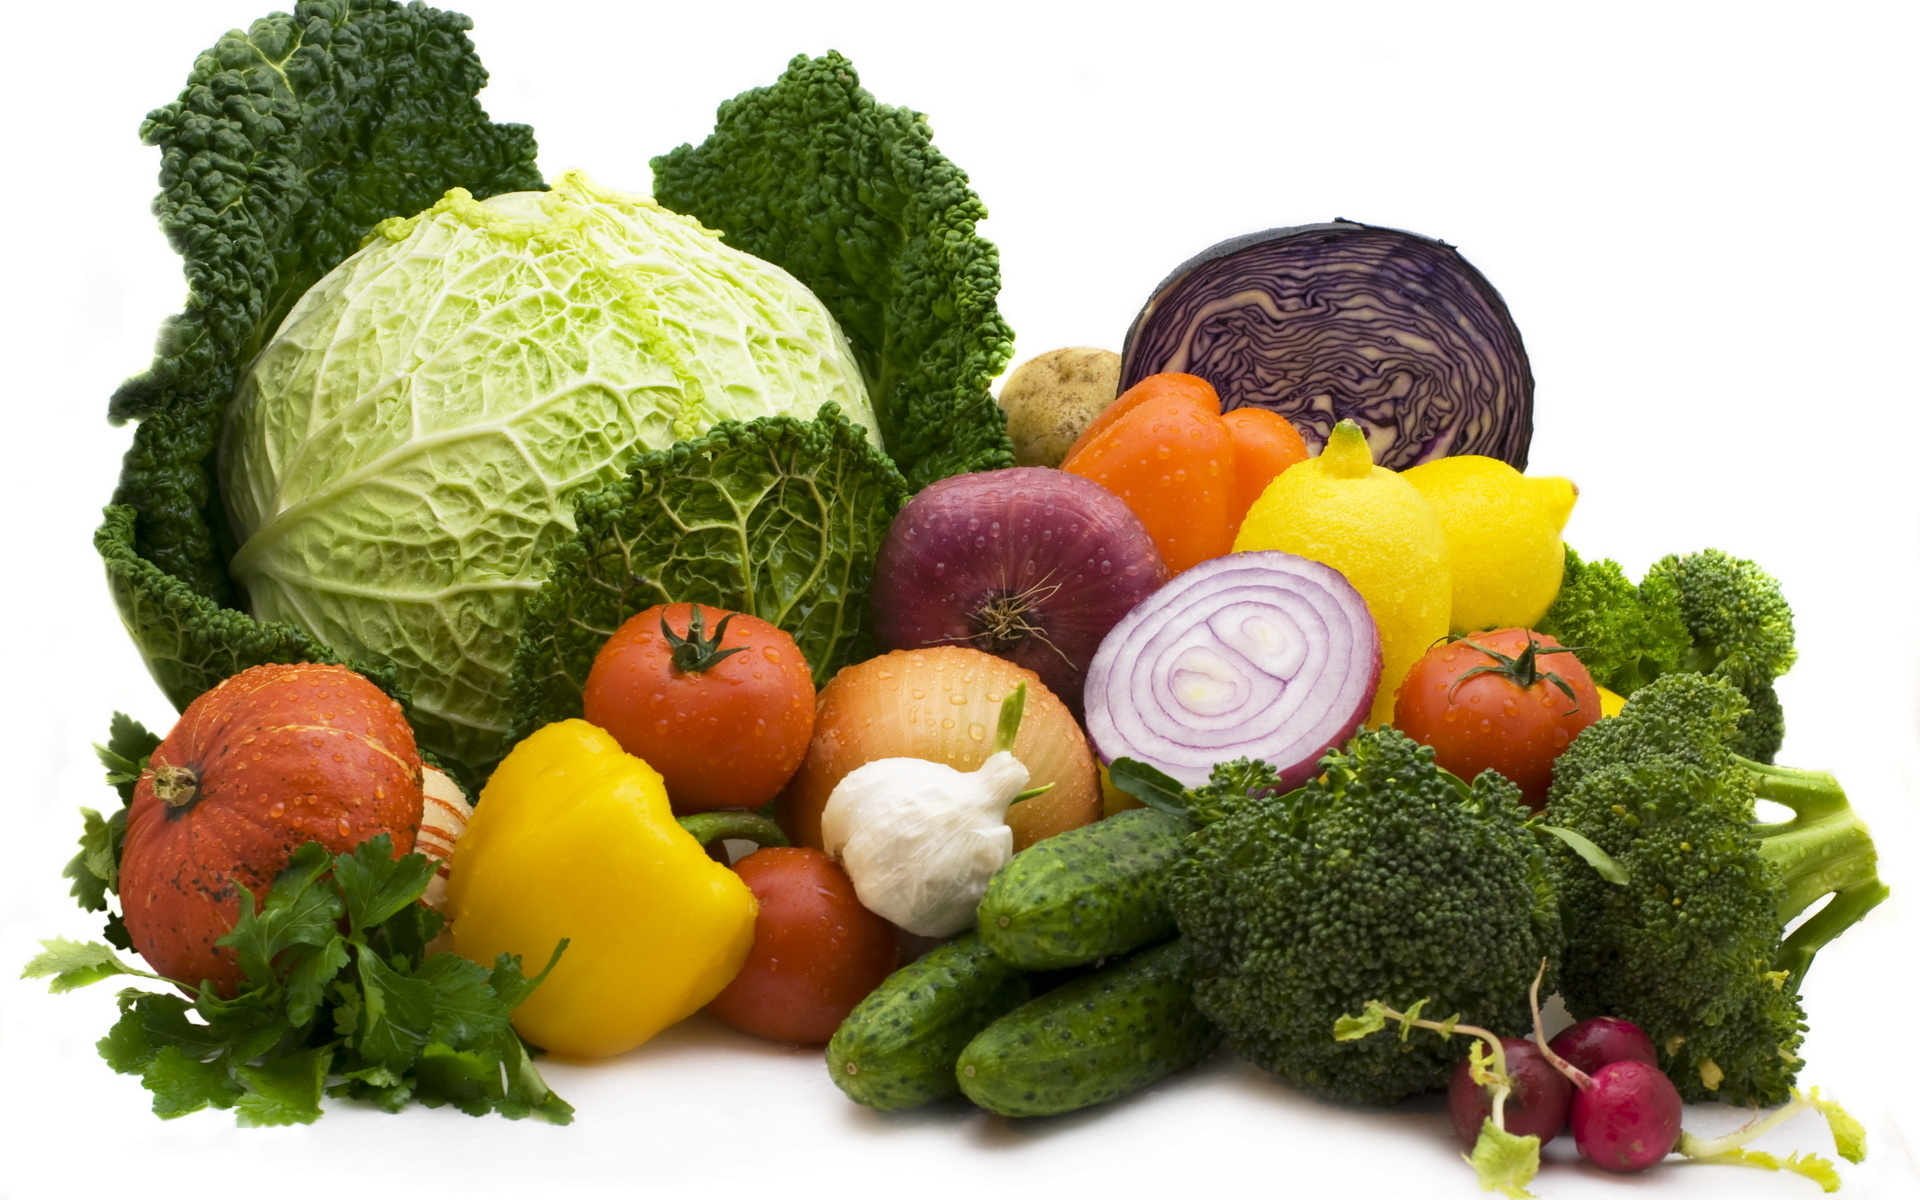 Здоровое питание включает овощи